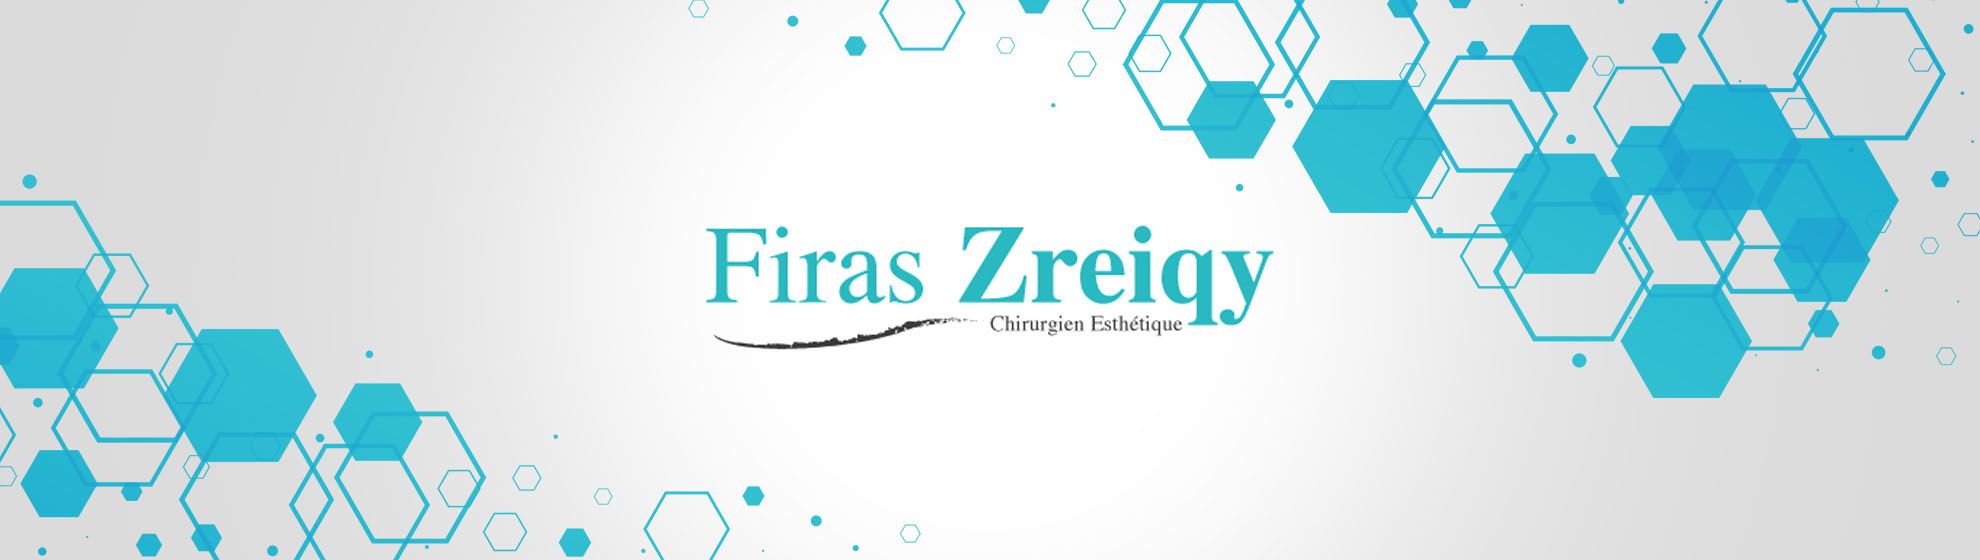 Dr Firas Zreiqy